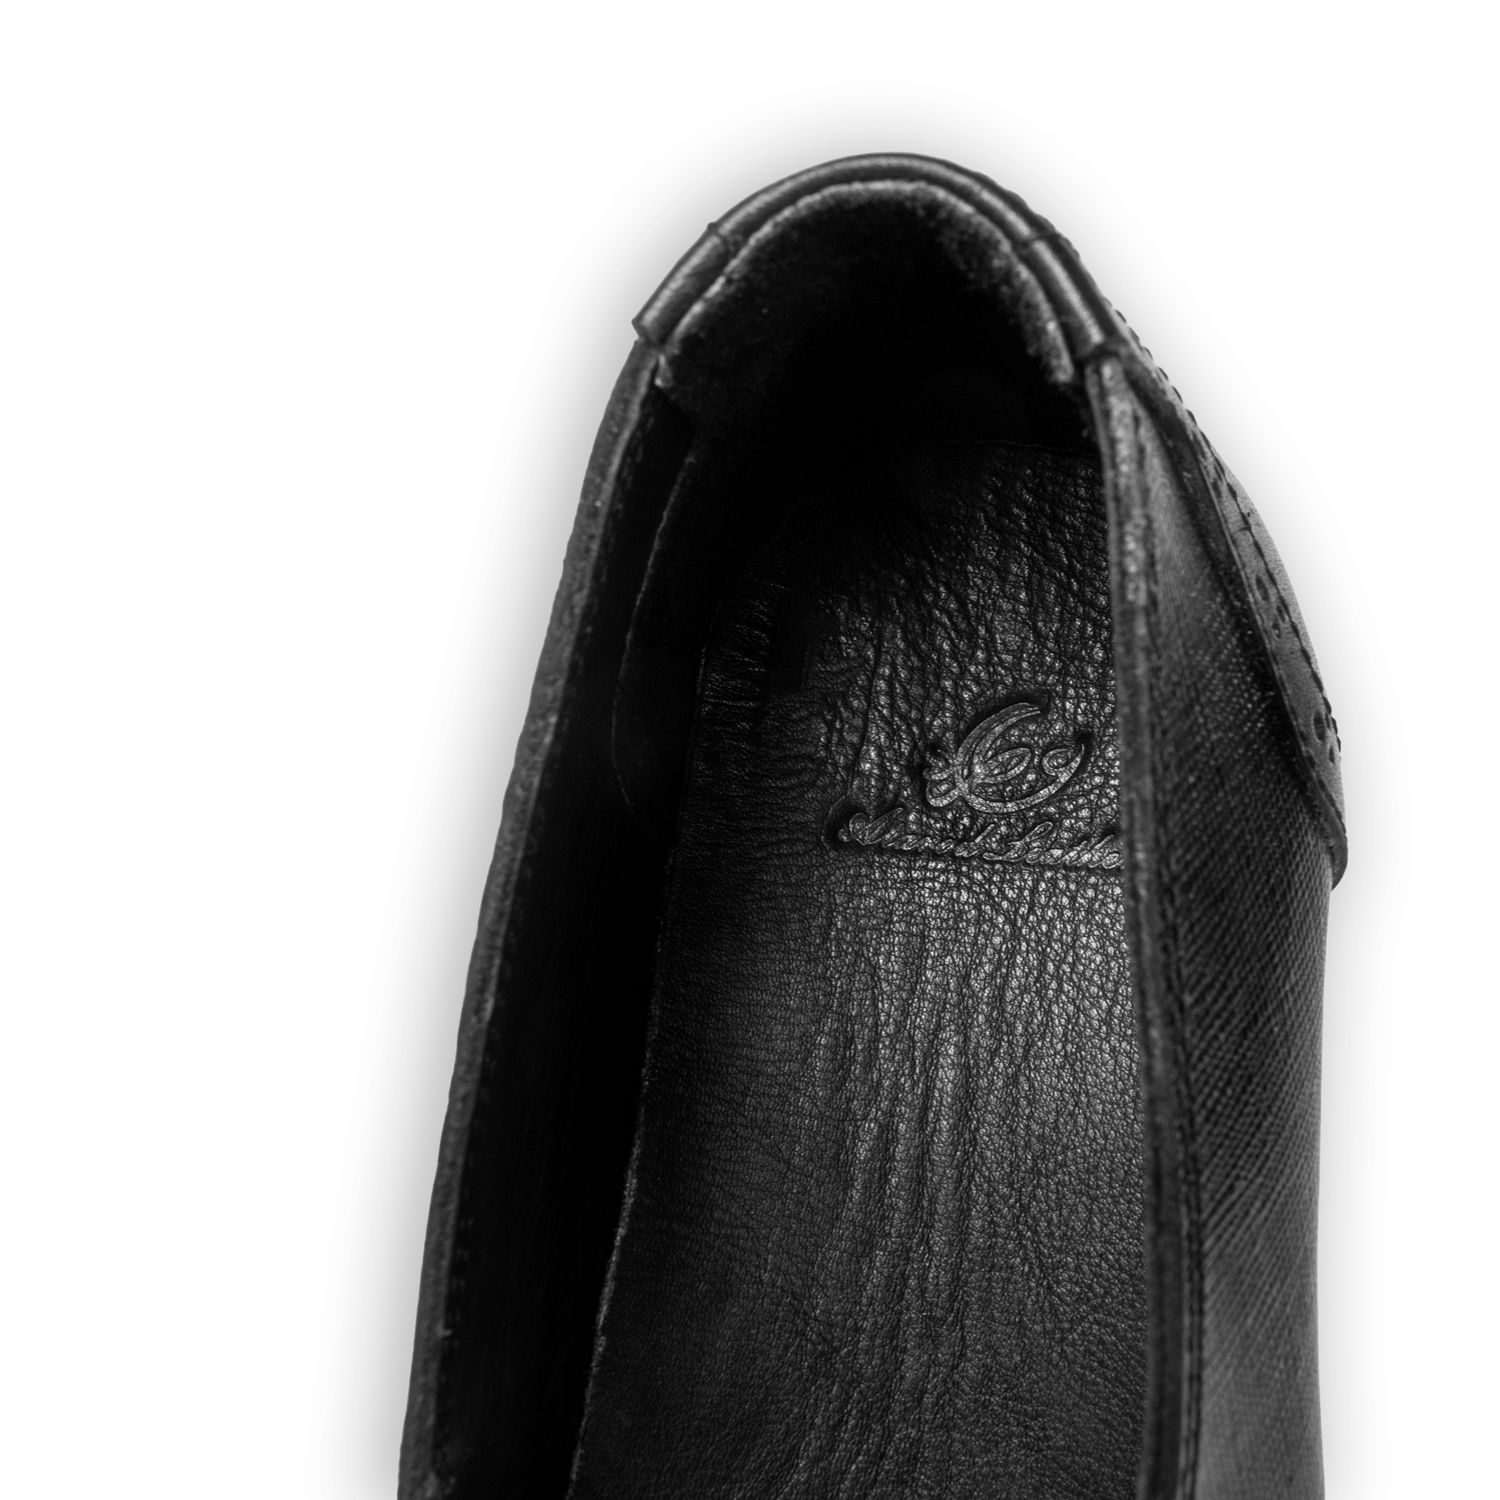 کفش زنانه چرم عطارد مدل طبی چرم طبیعی کد SH77 -  - 11